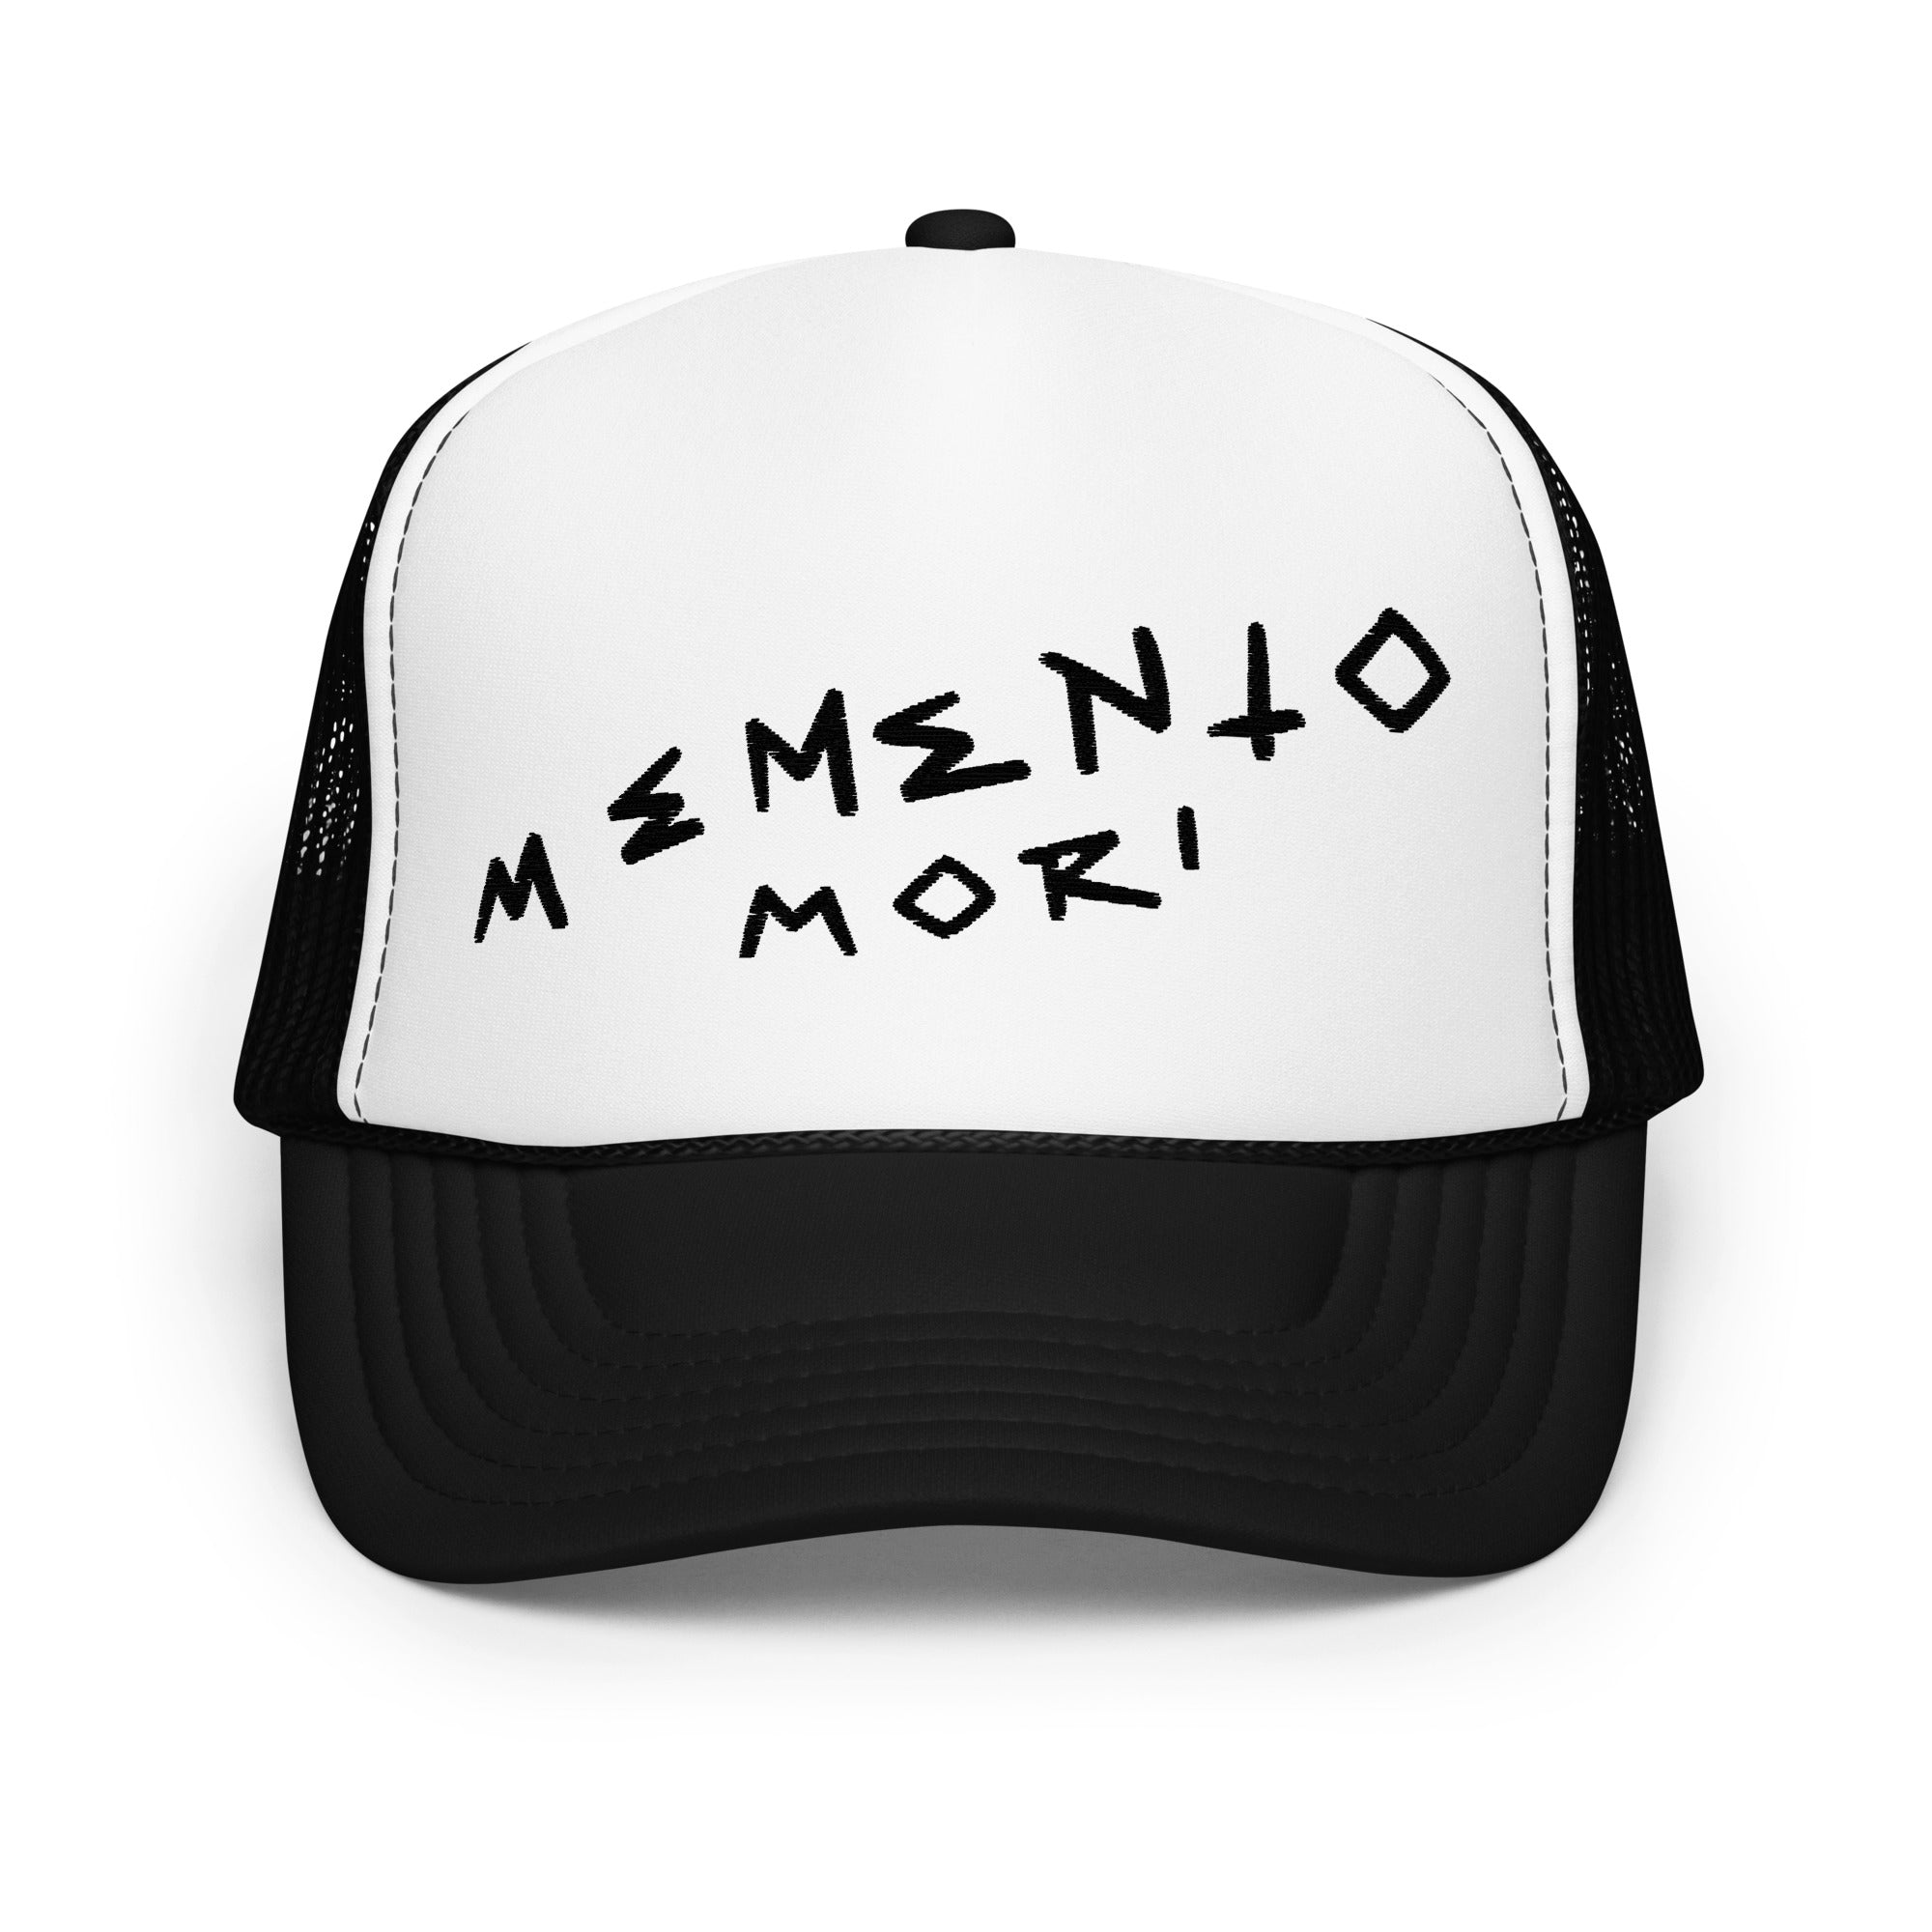 Memento Mori Black Foam trucker hat